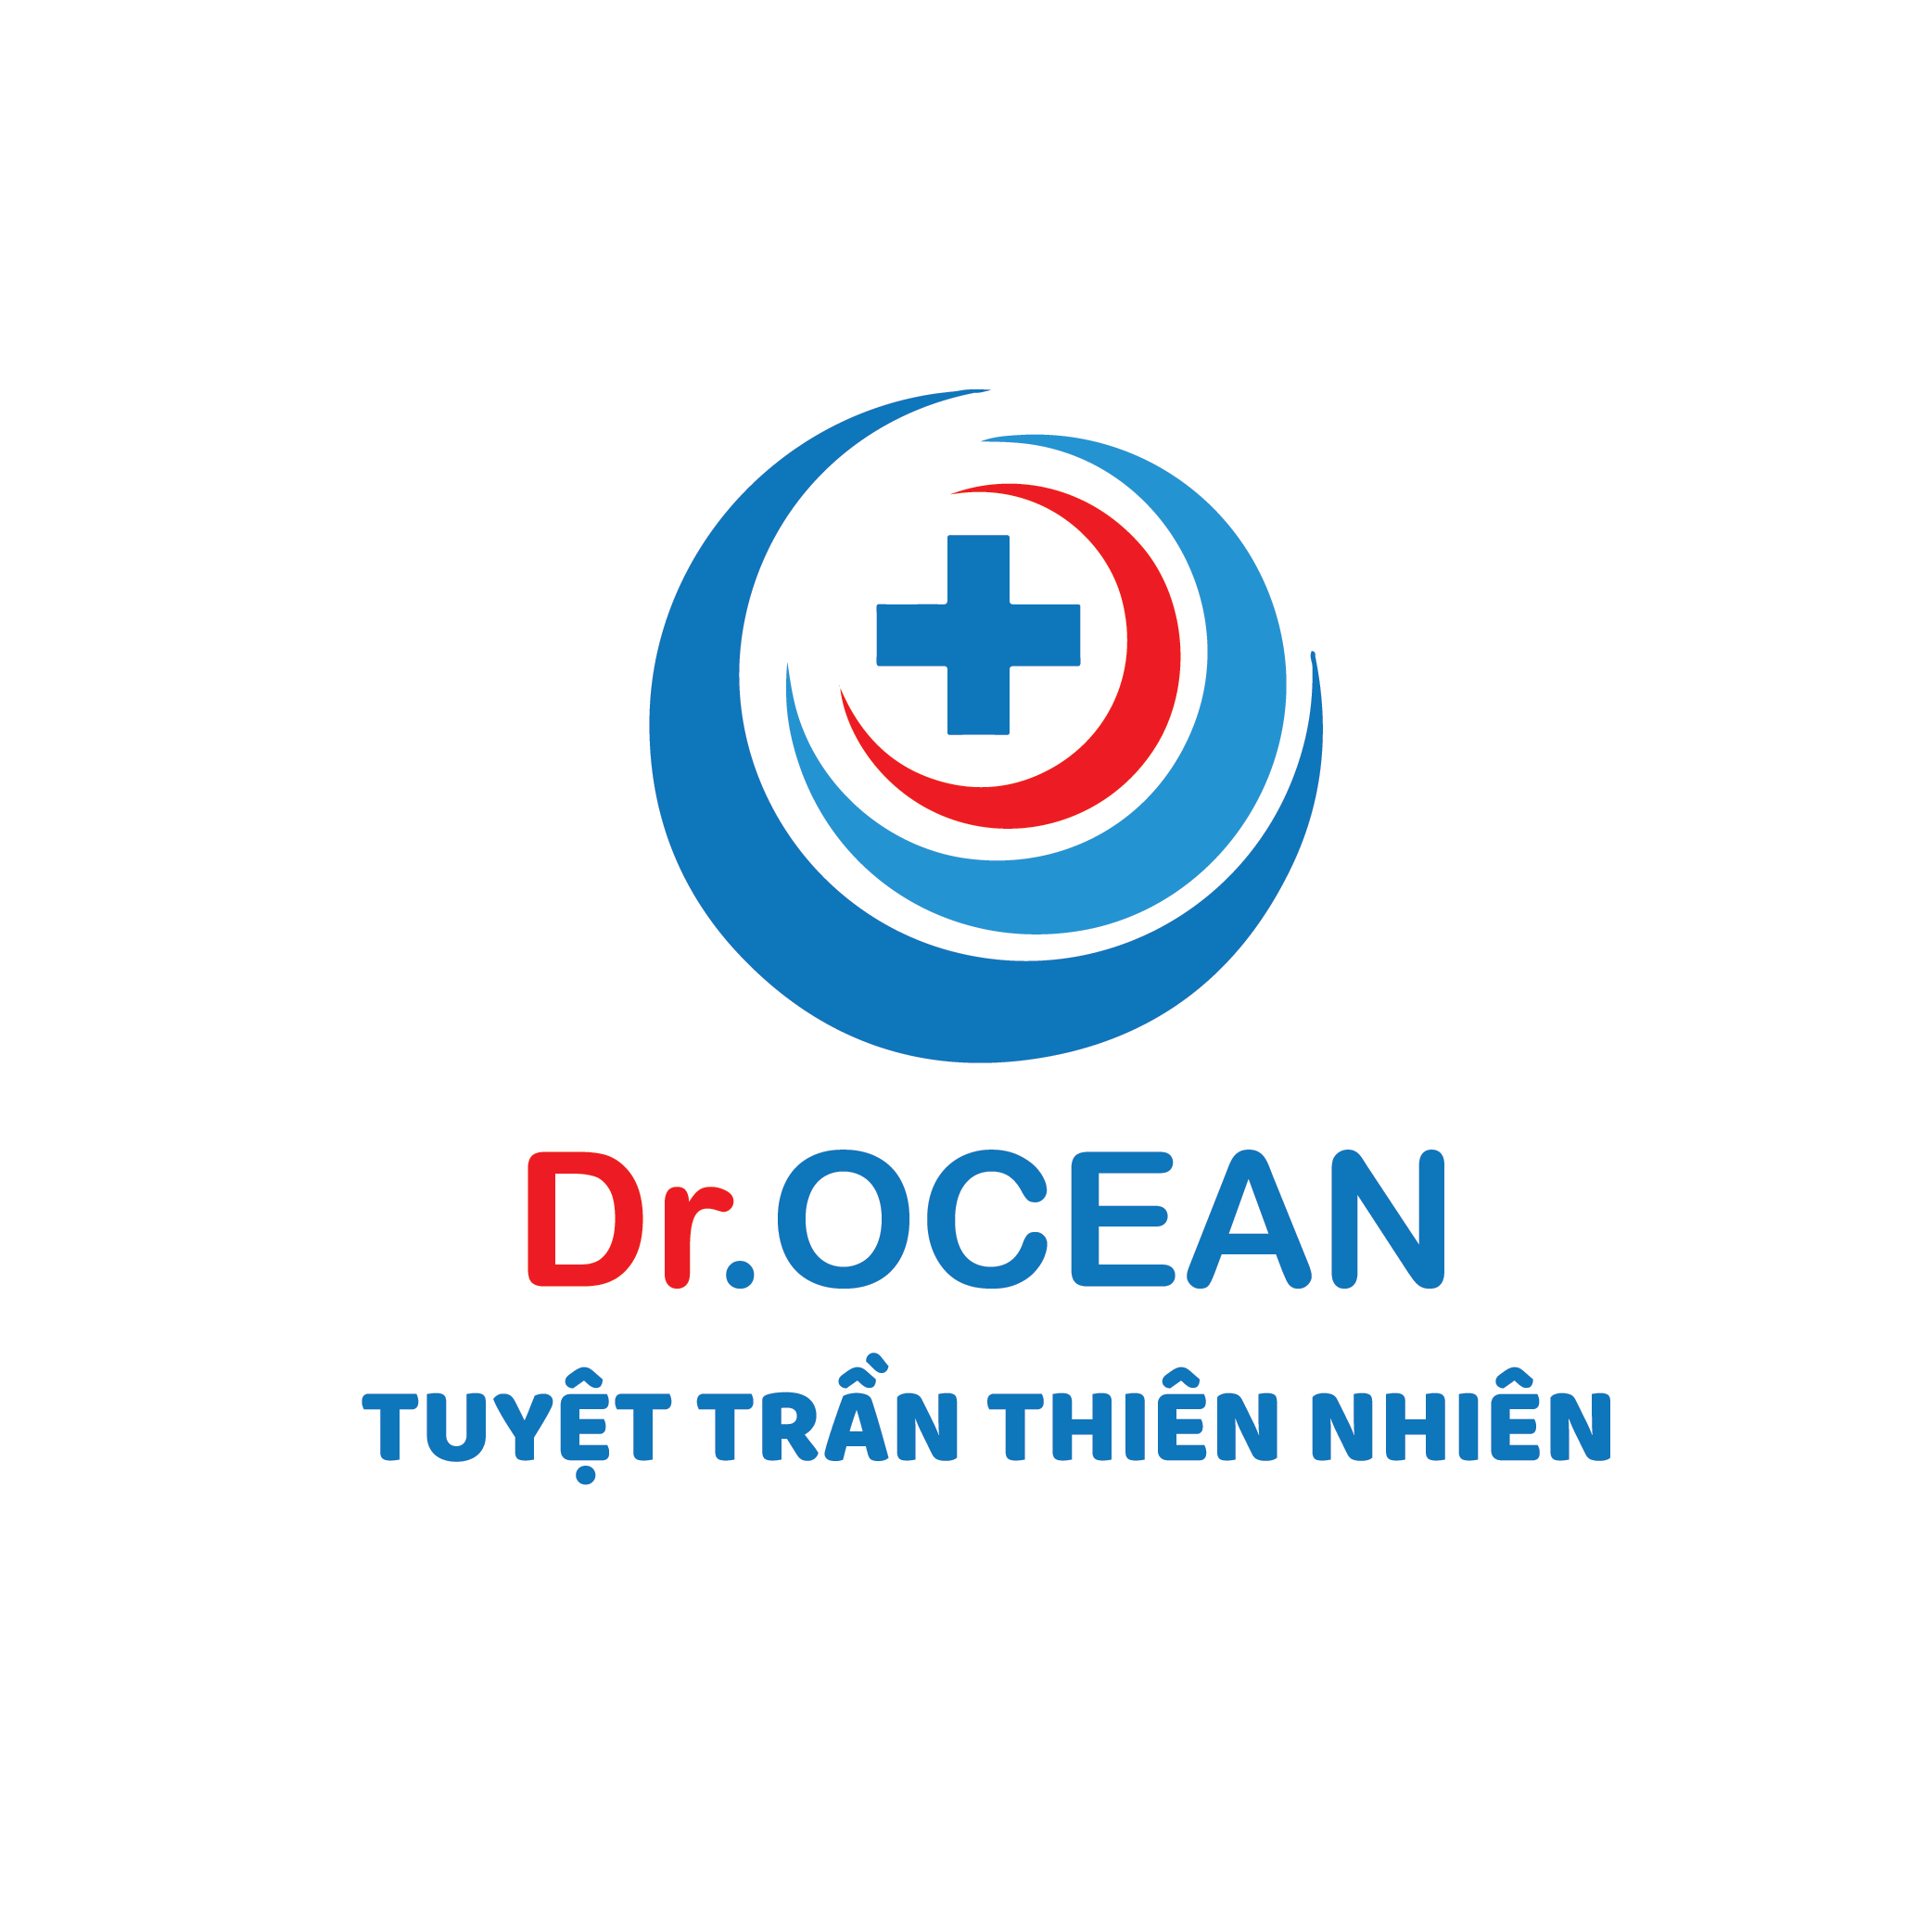 Dr Ocean - Tuyệt Trần Thiên Nhiên - Dr. Ocean